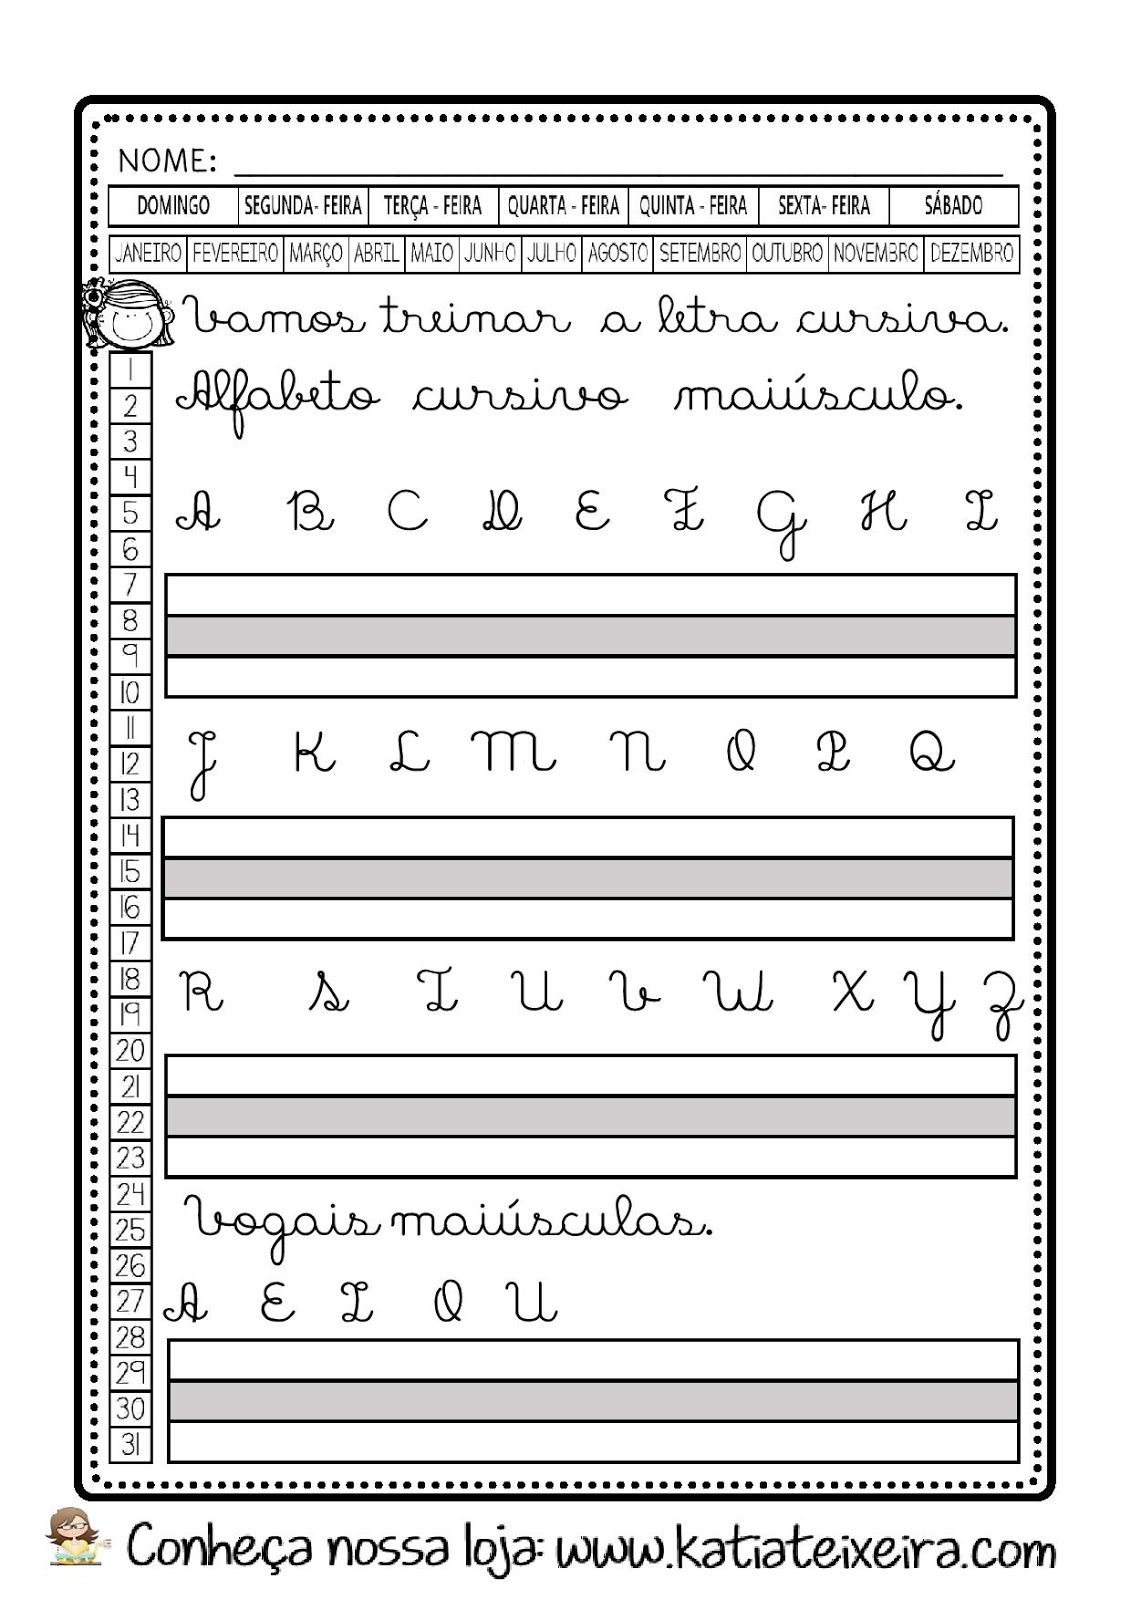 manual de caligrafia palmer pdf